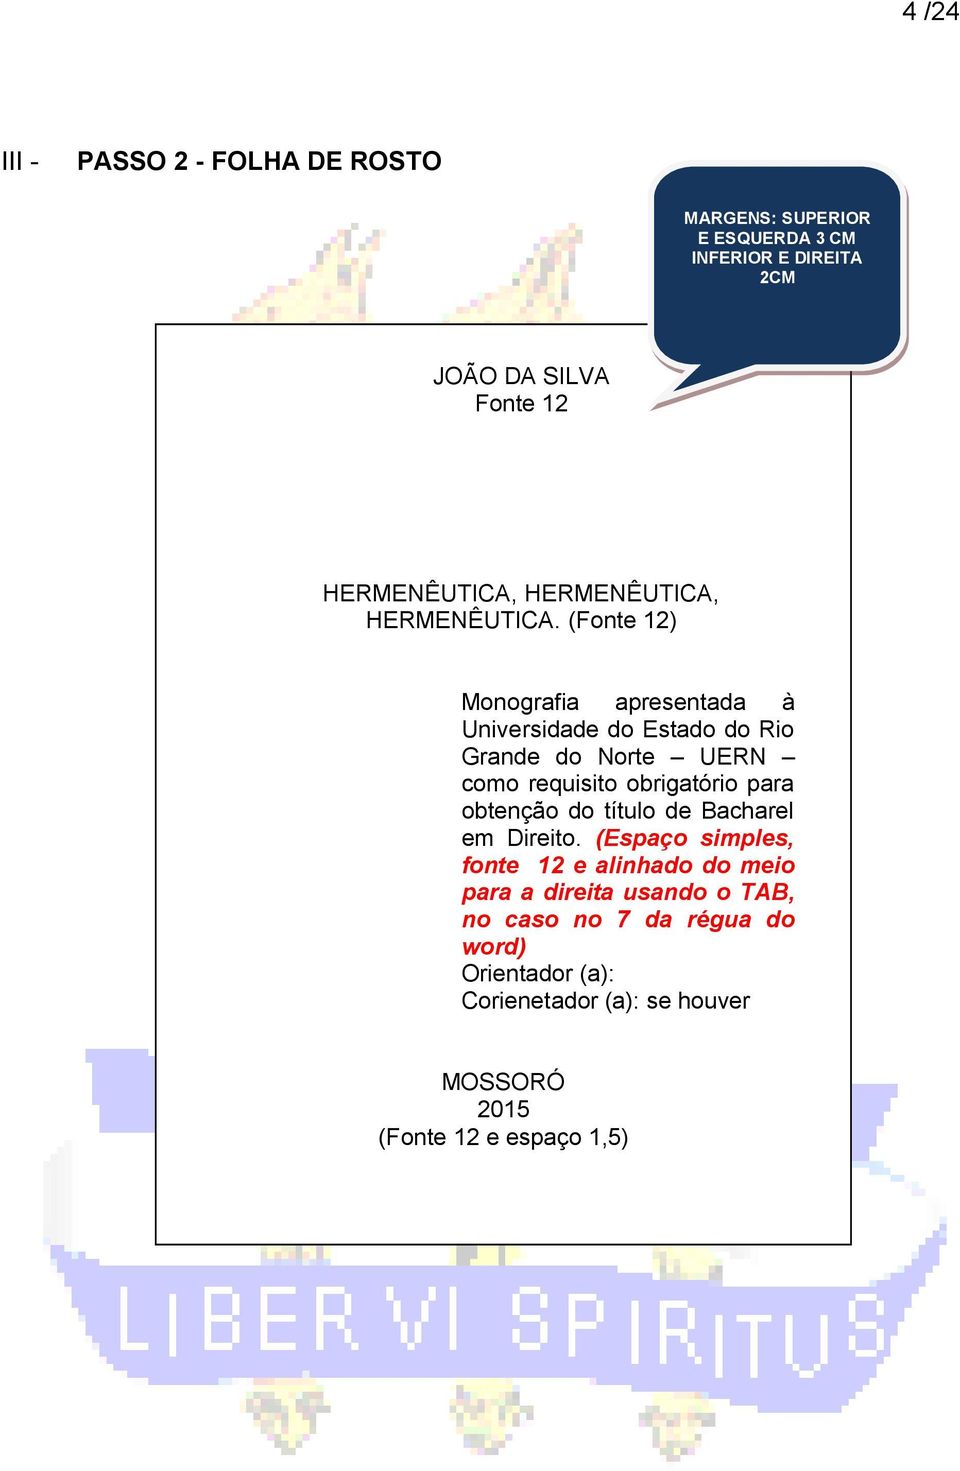 (Fonte 12) Monografia apresentada à Universidade do Estado do Rio Grande do Norte UERN como requisito obrigatório para